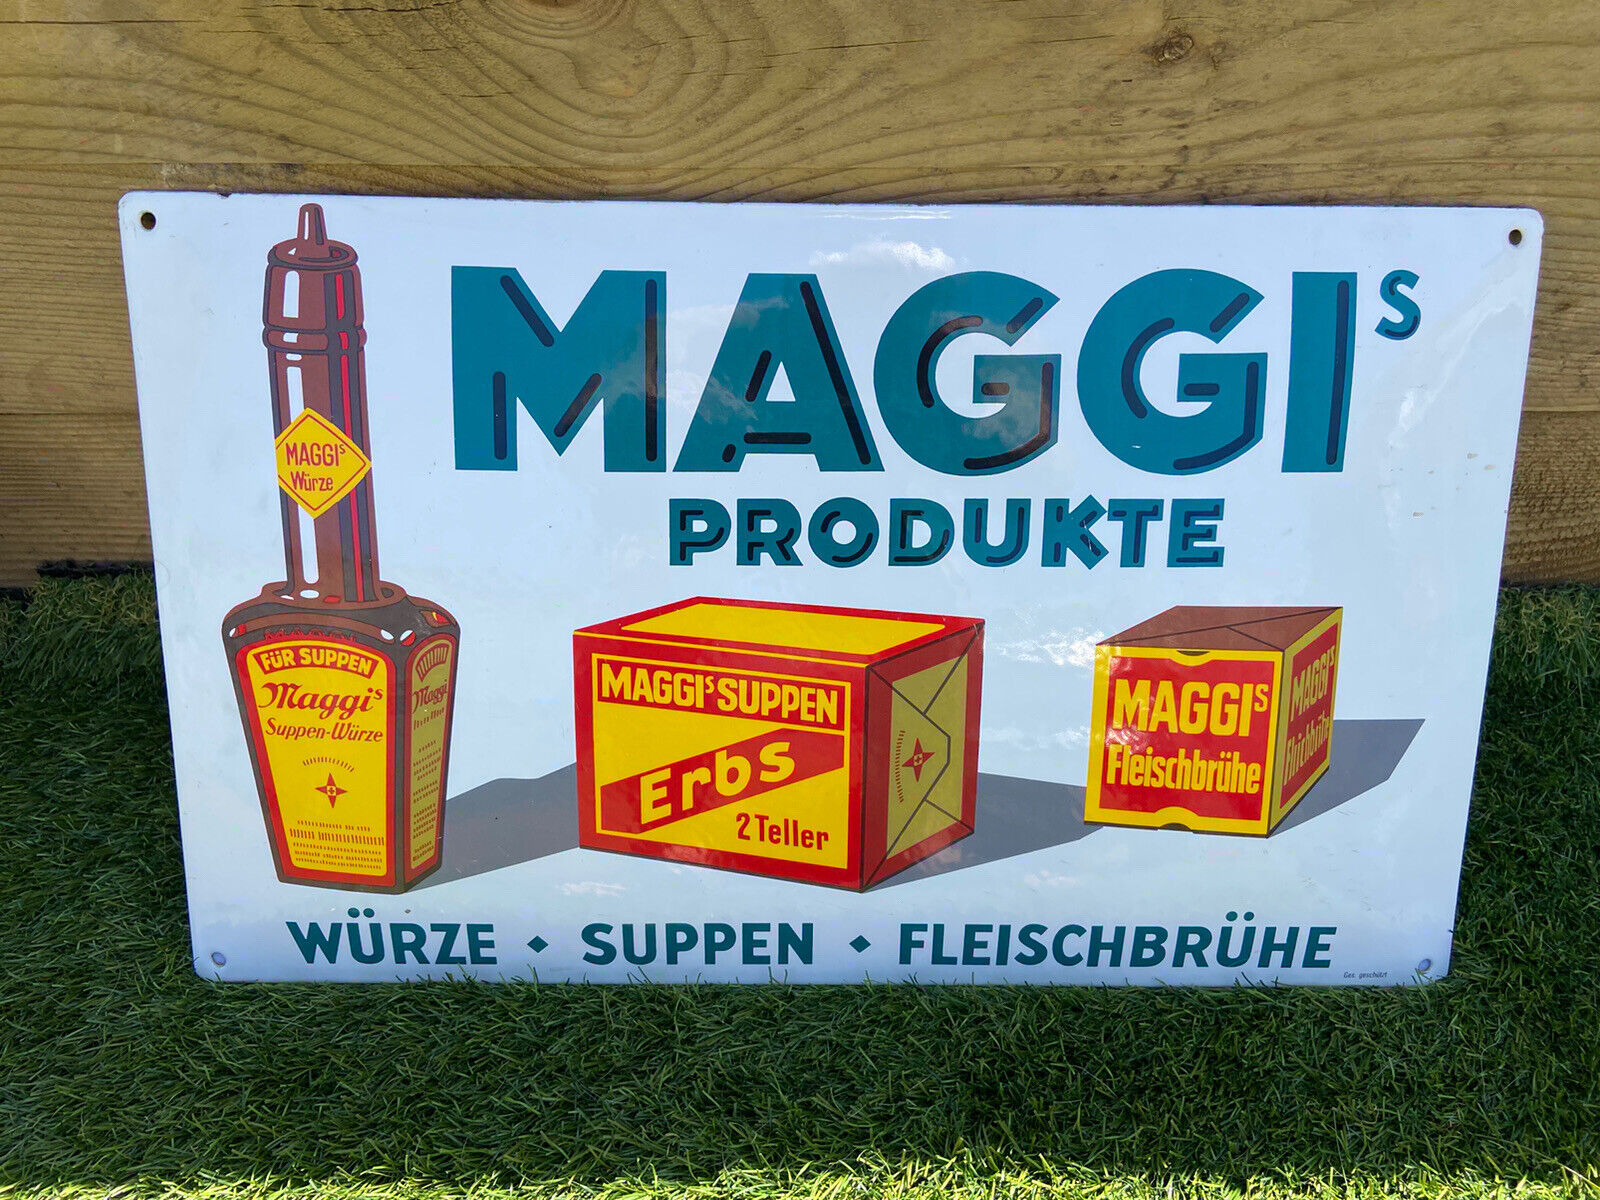 Maggis Produkte Wurze Suppen Fleischbruhe 1970s Enamel Sign Very Good Condition